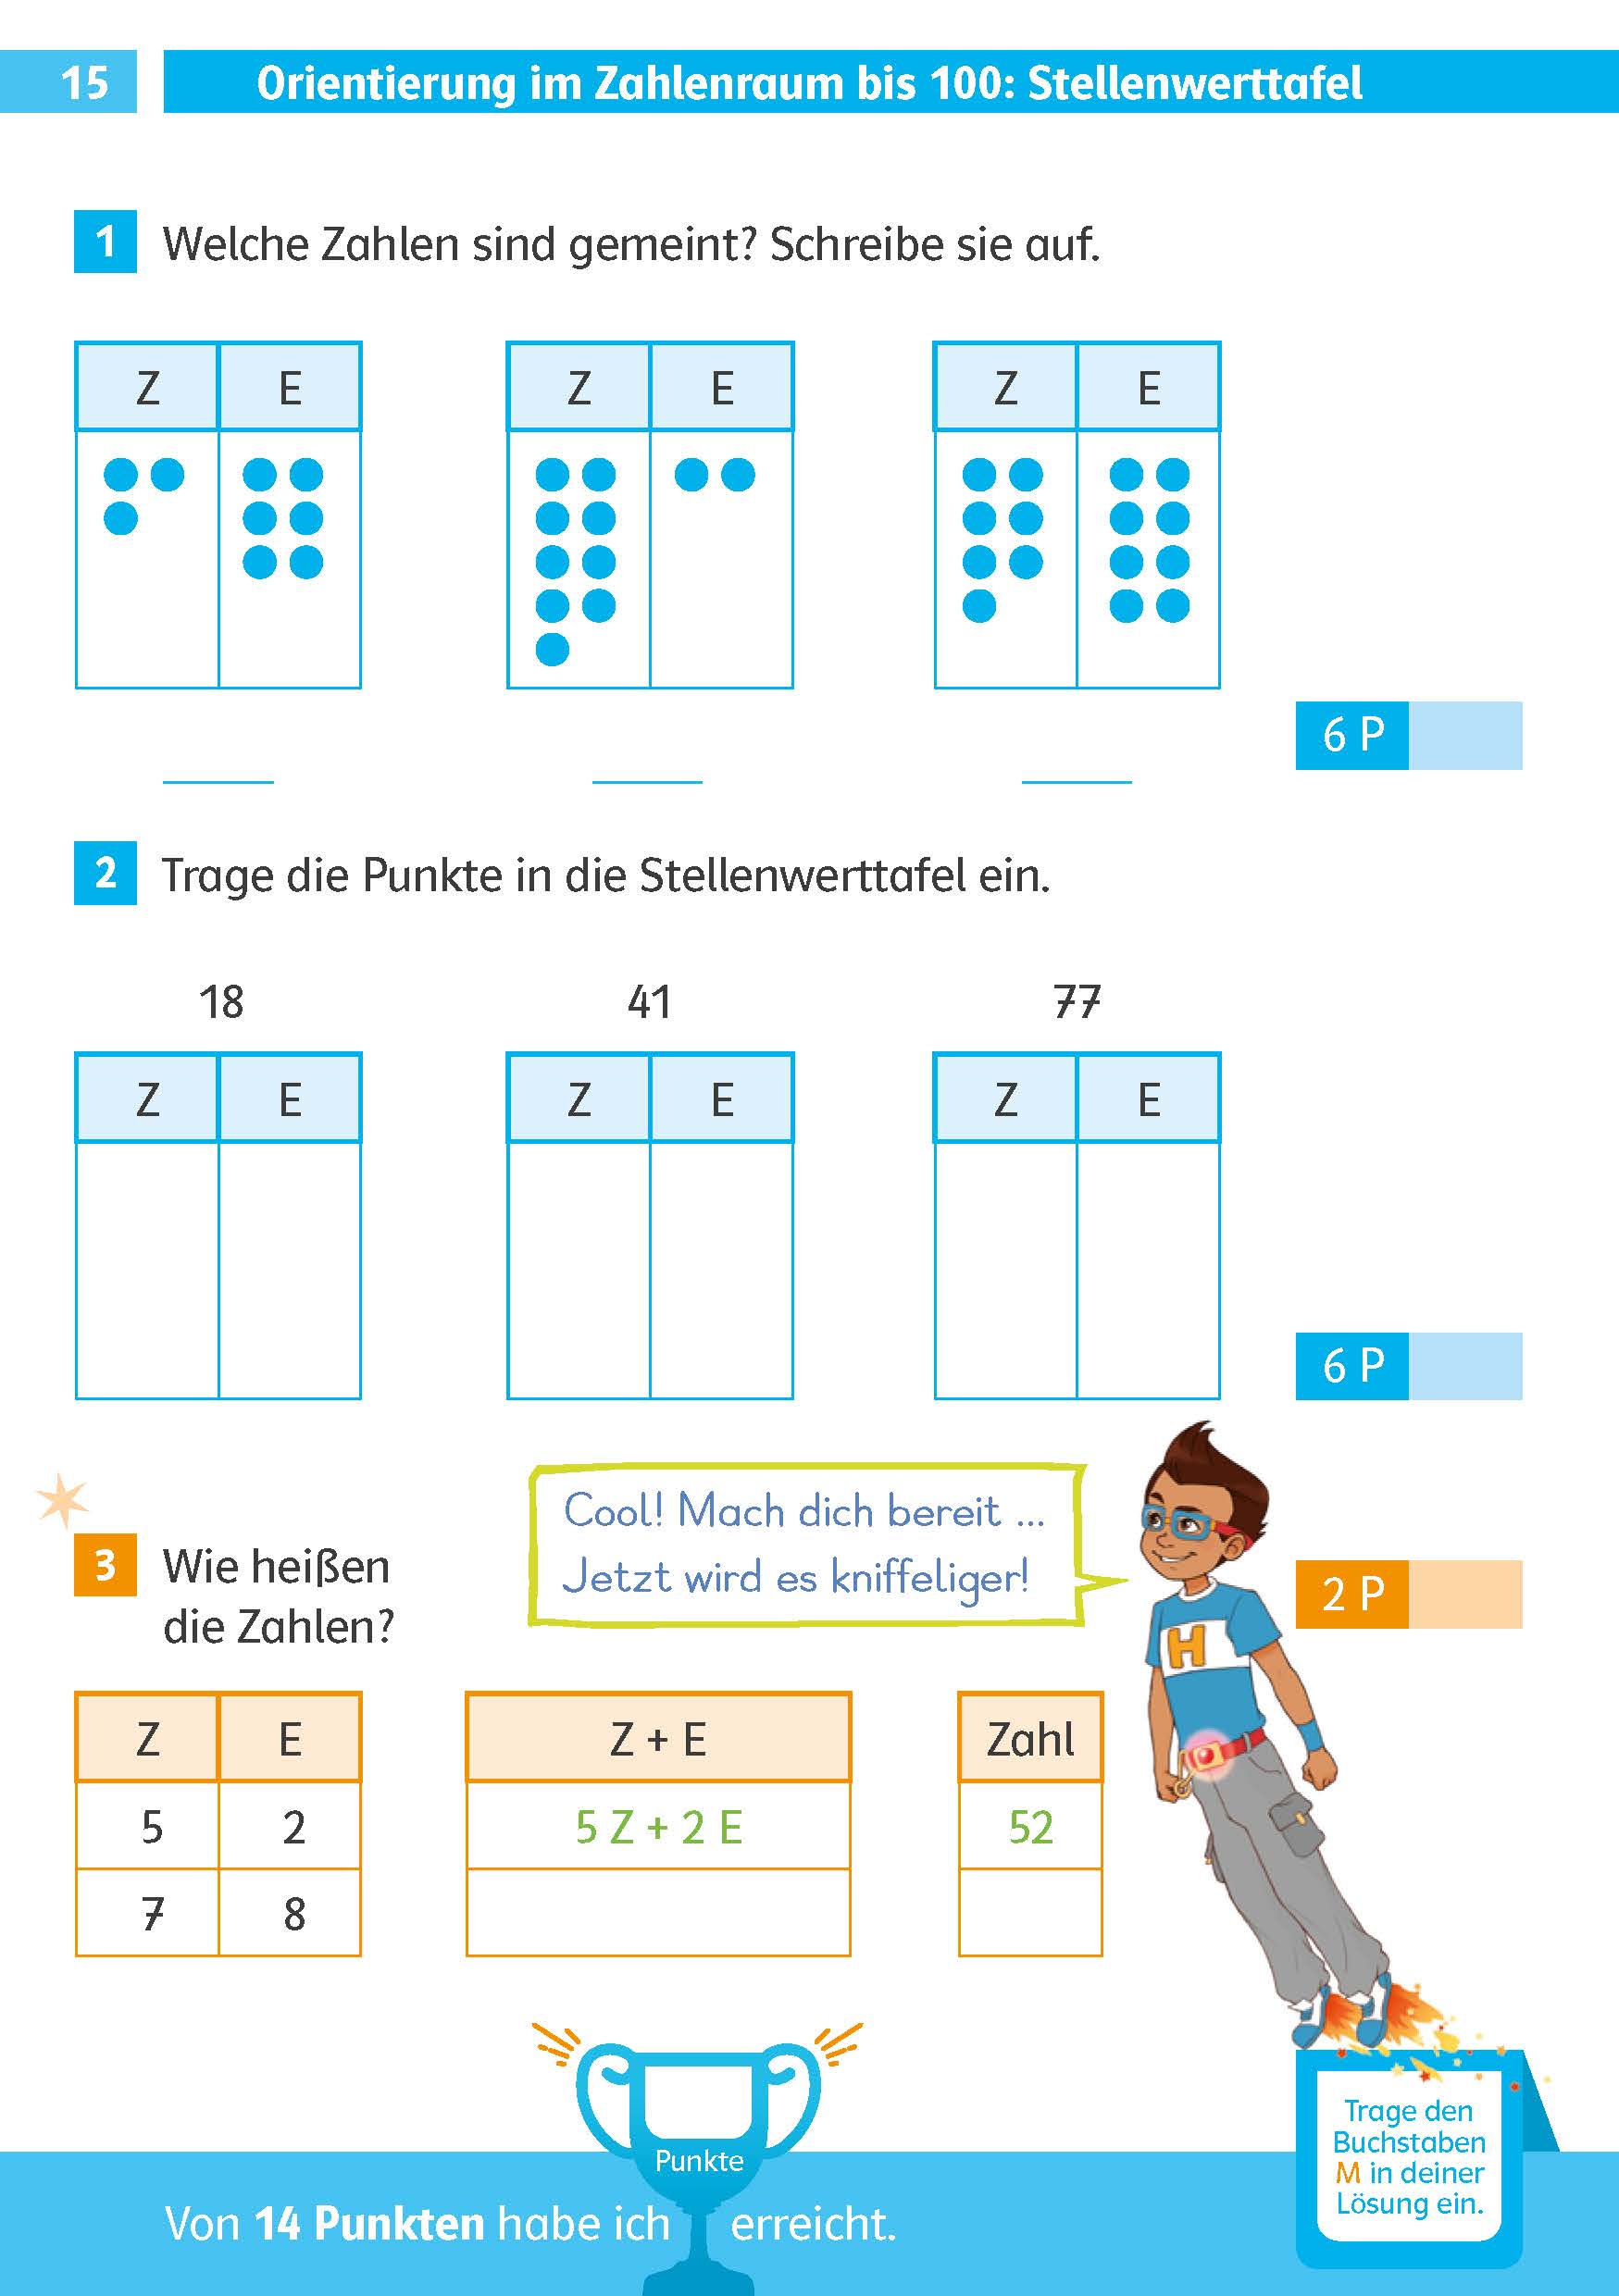 Klett Die Mathe-Helden: Mathe-Testblock So gut bin ich! 2. Klasse